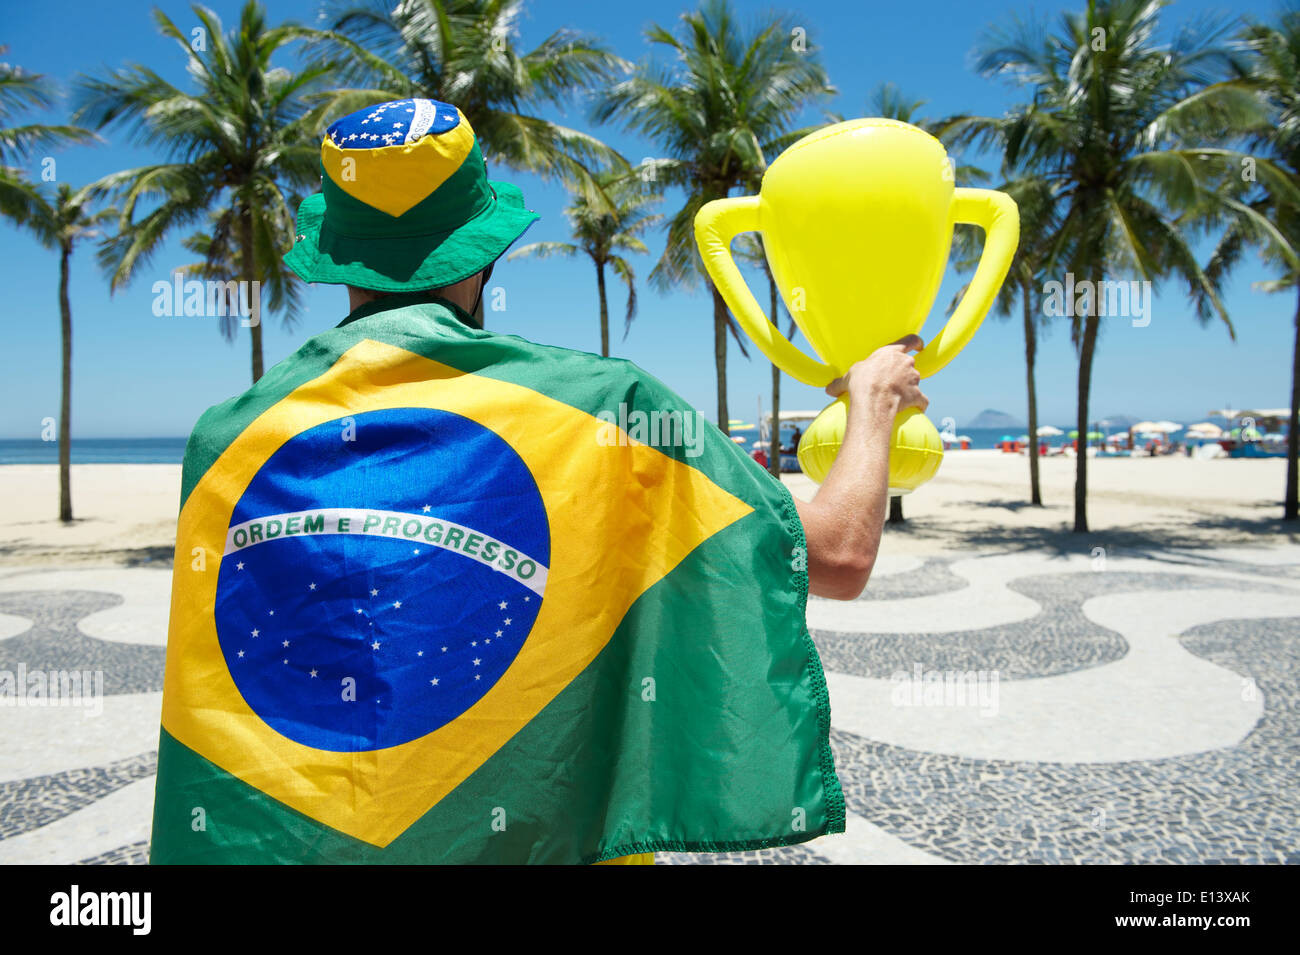 Fier drapeau brésilien à regalia holding inflatable trophée à plage de Copacabana Rio de Janeiro Brésil Banque D'Images